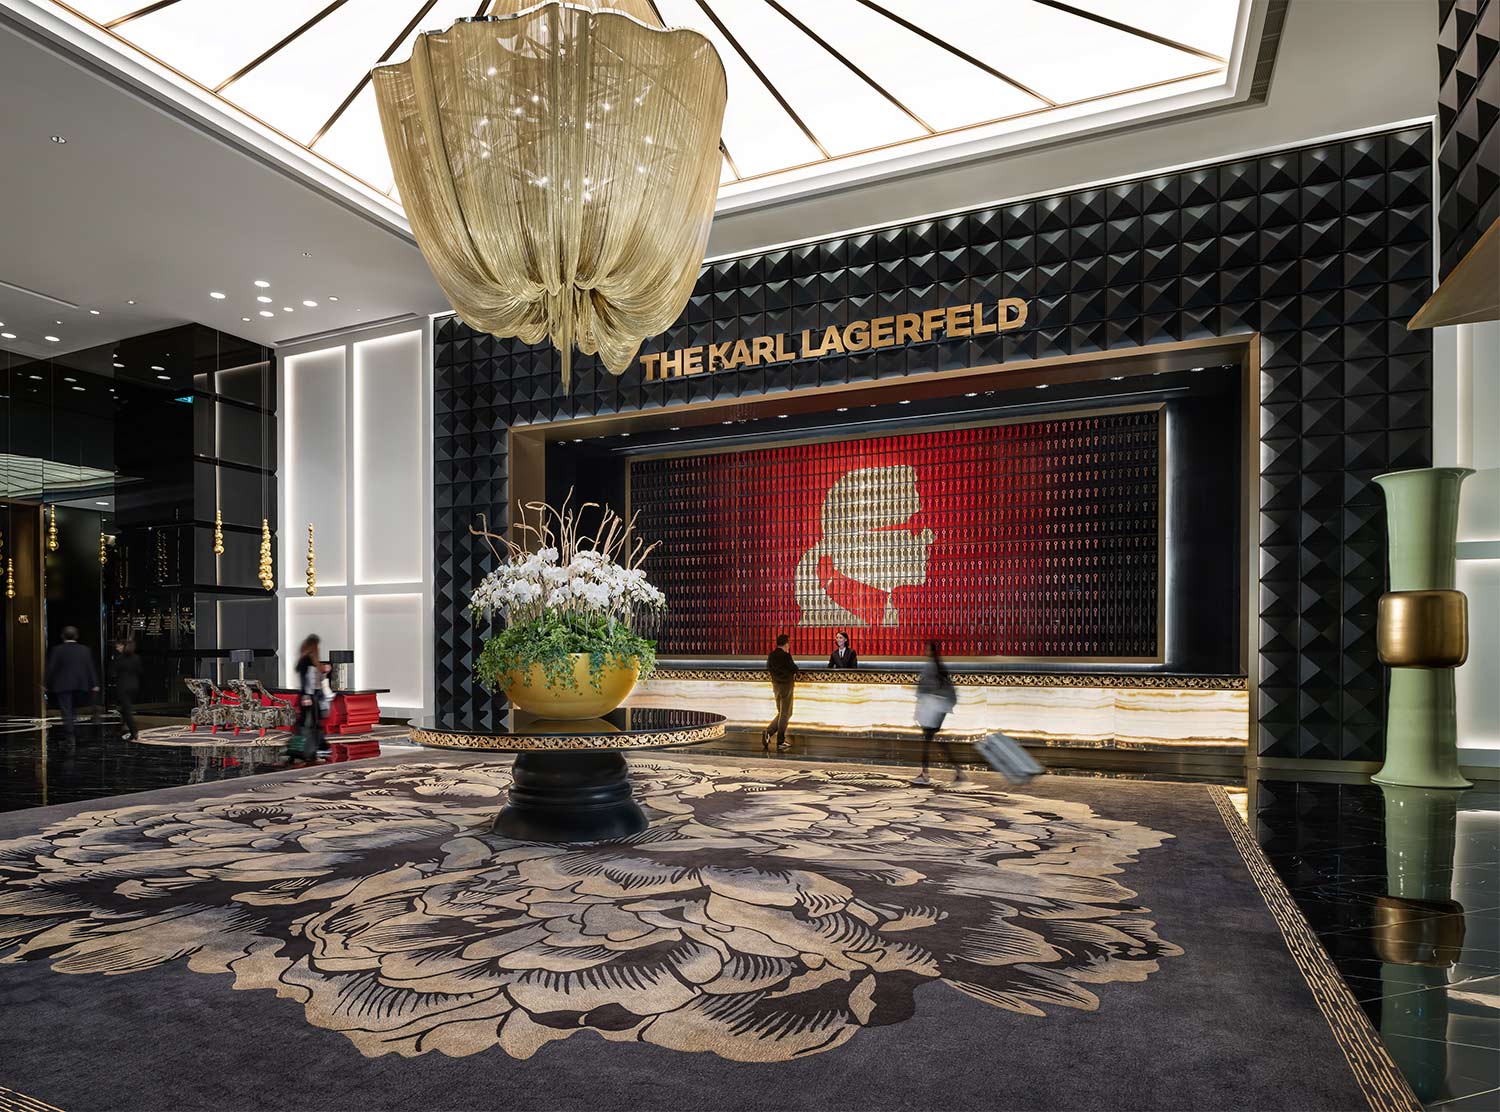 The Karl Lagerfeld Macau opens in June 2023